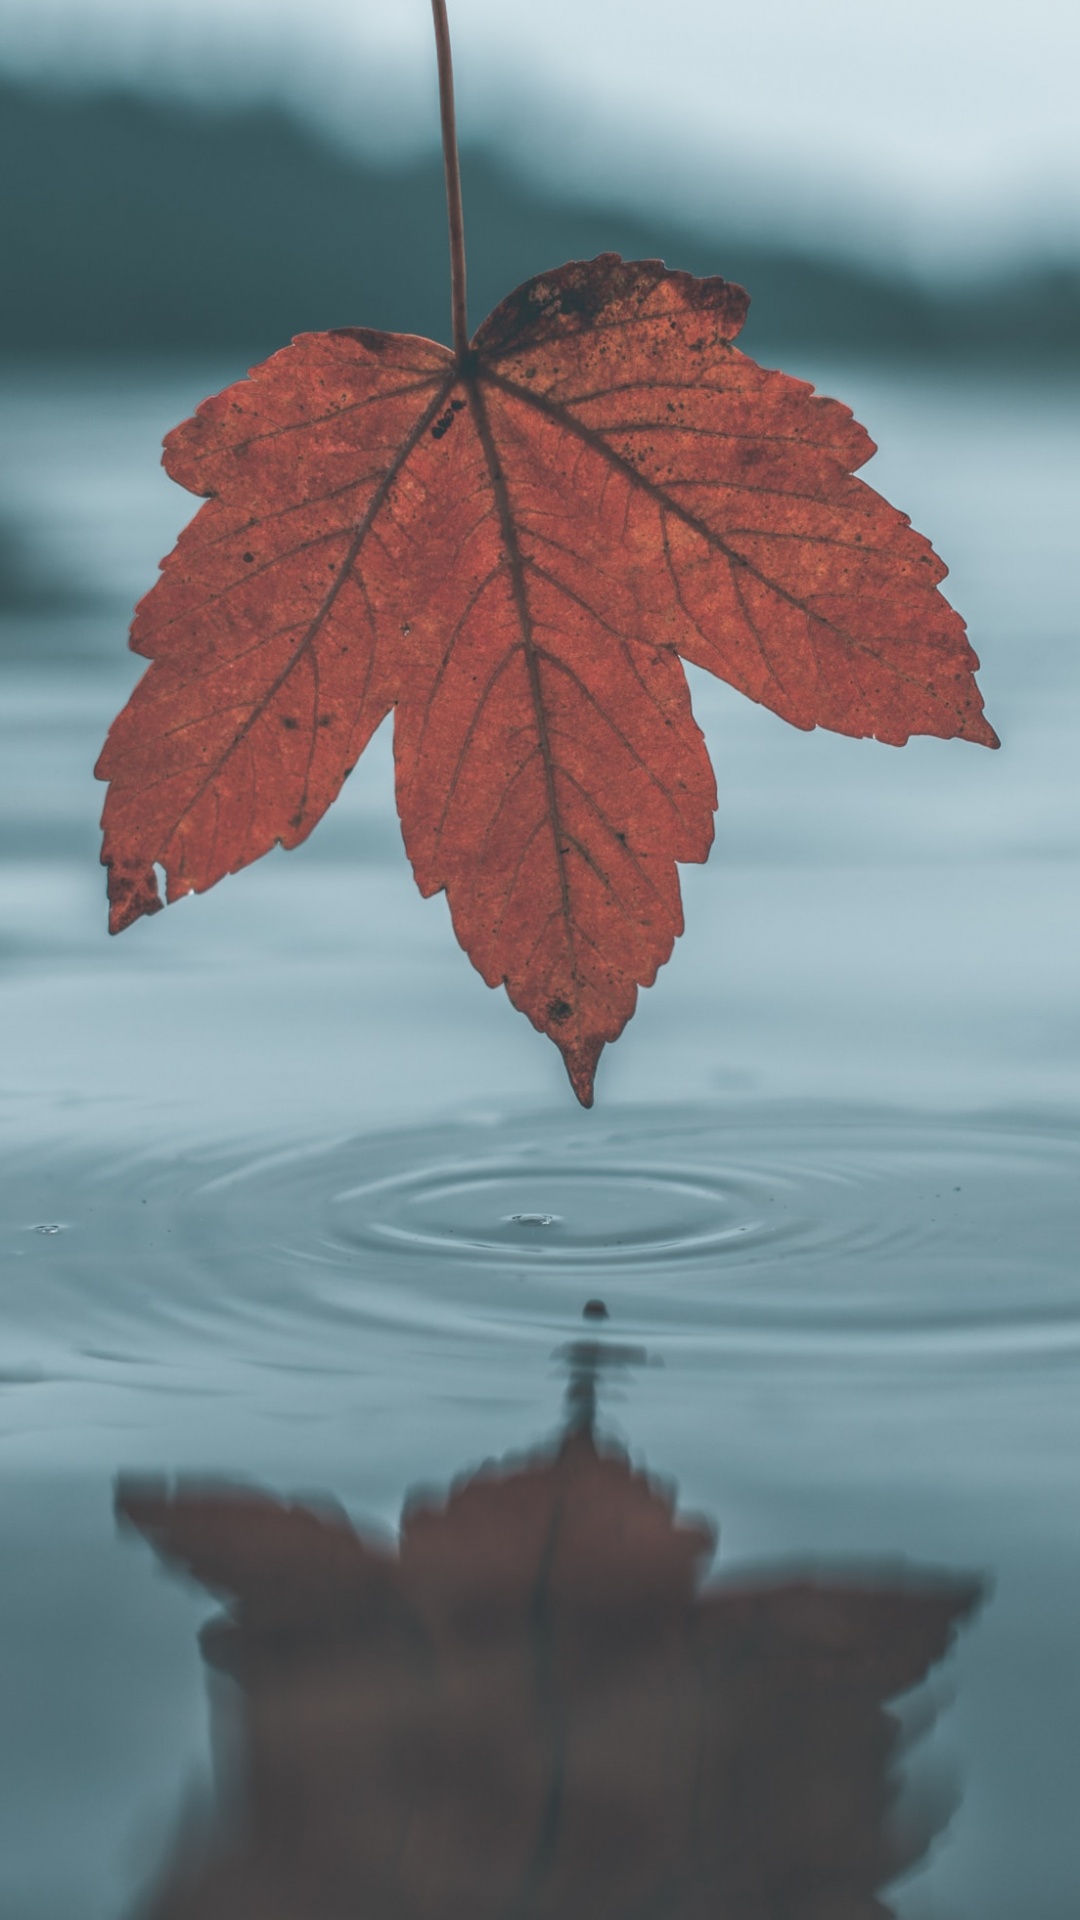 Blatt, Wasser, Baum, Reflexion, Maple Leaf. Wallpaper in 1080x1920 Resolution